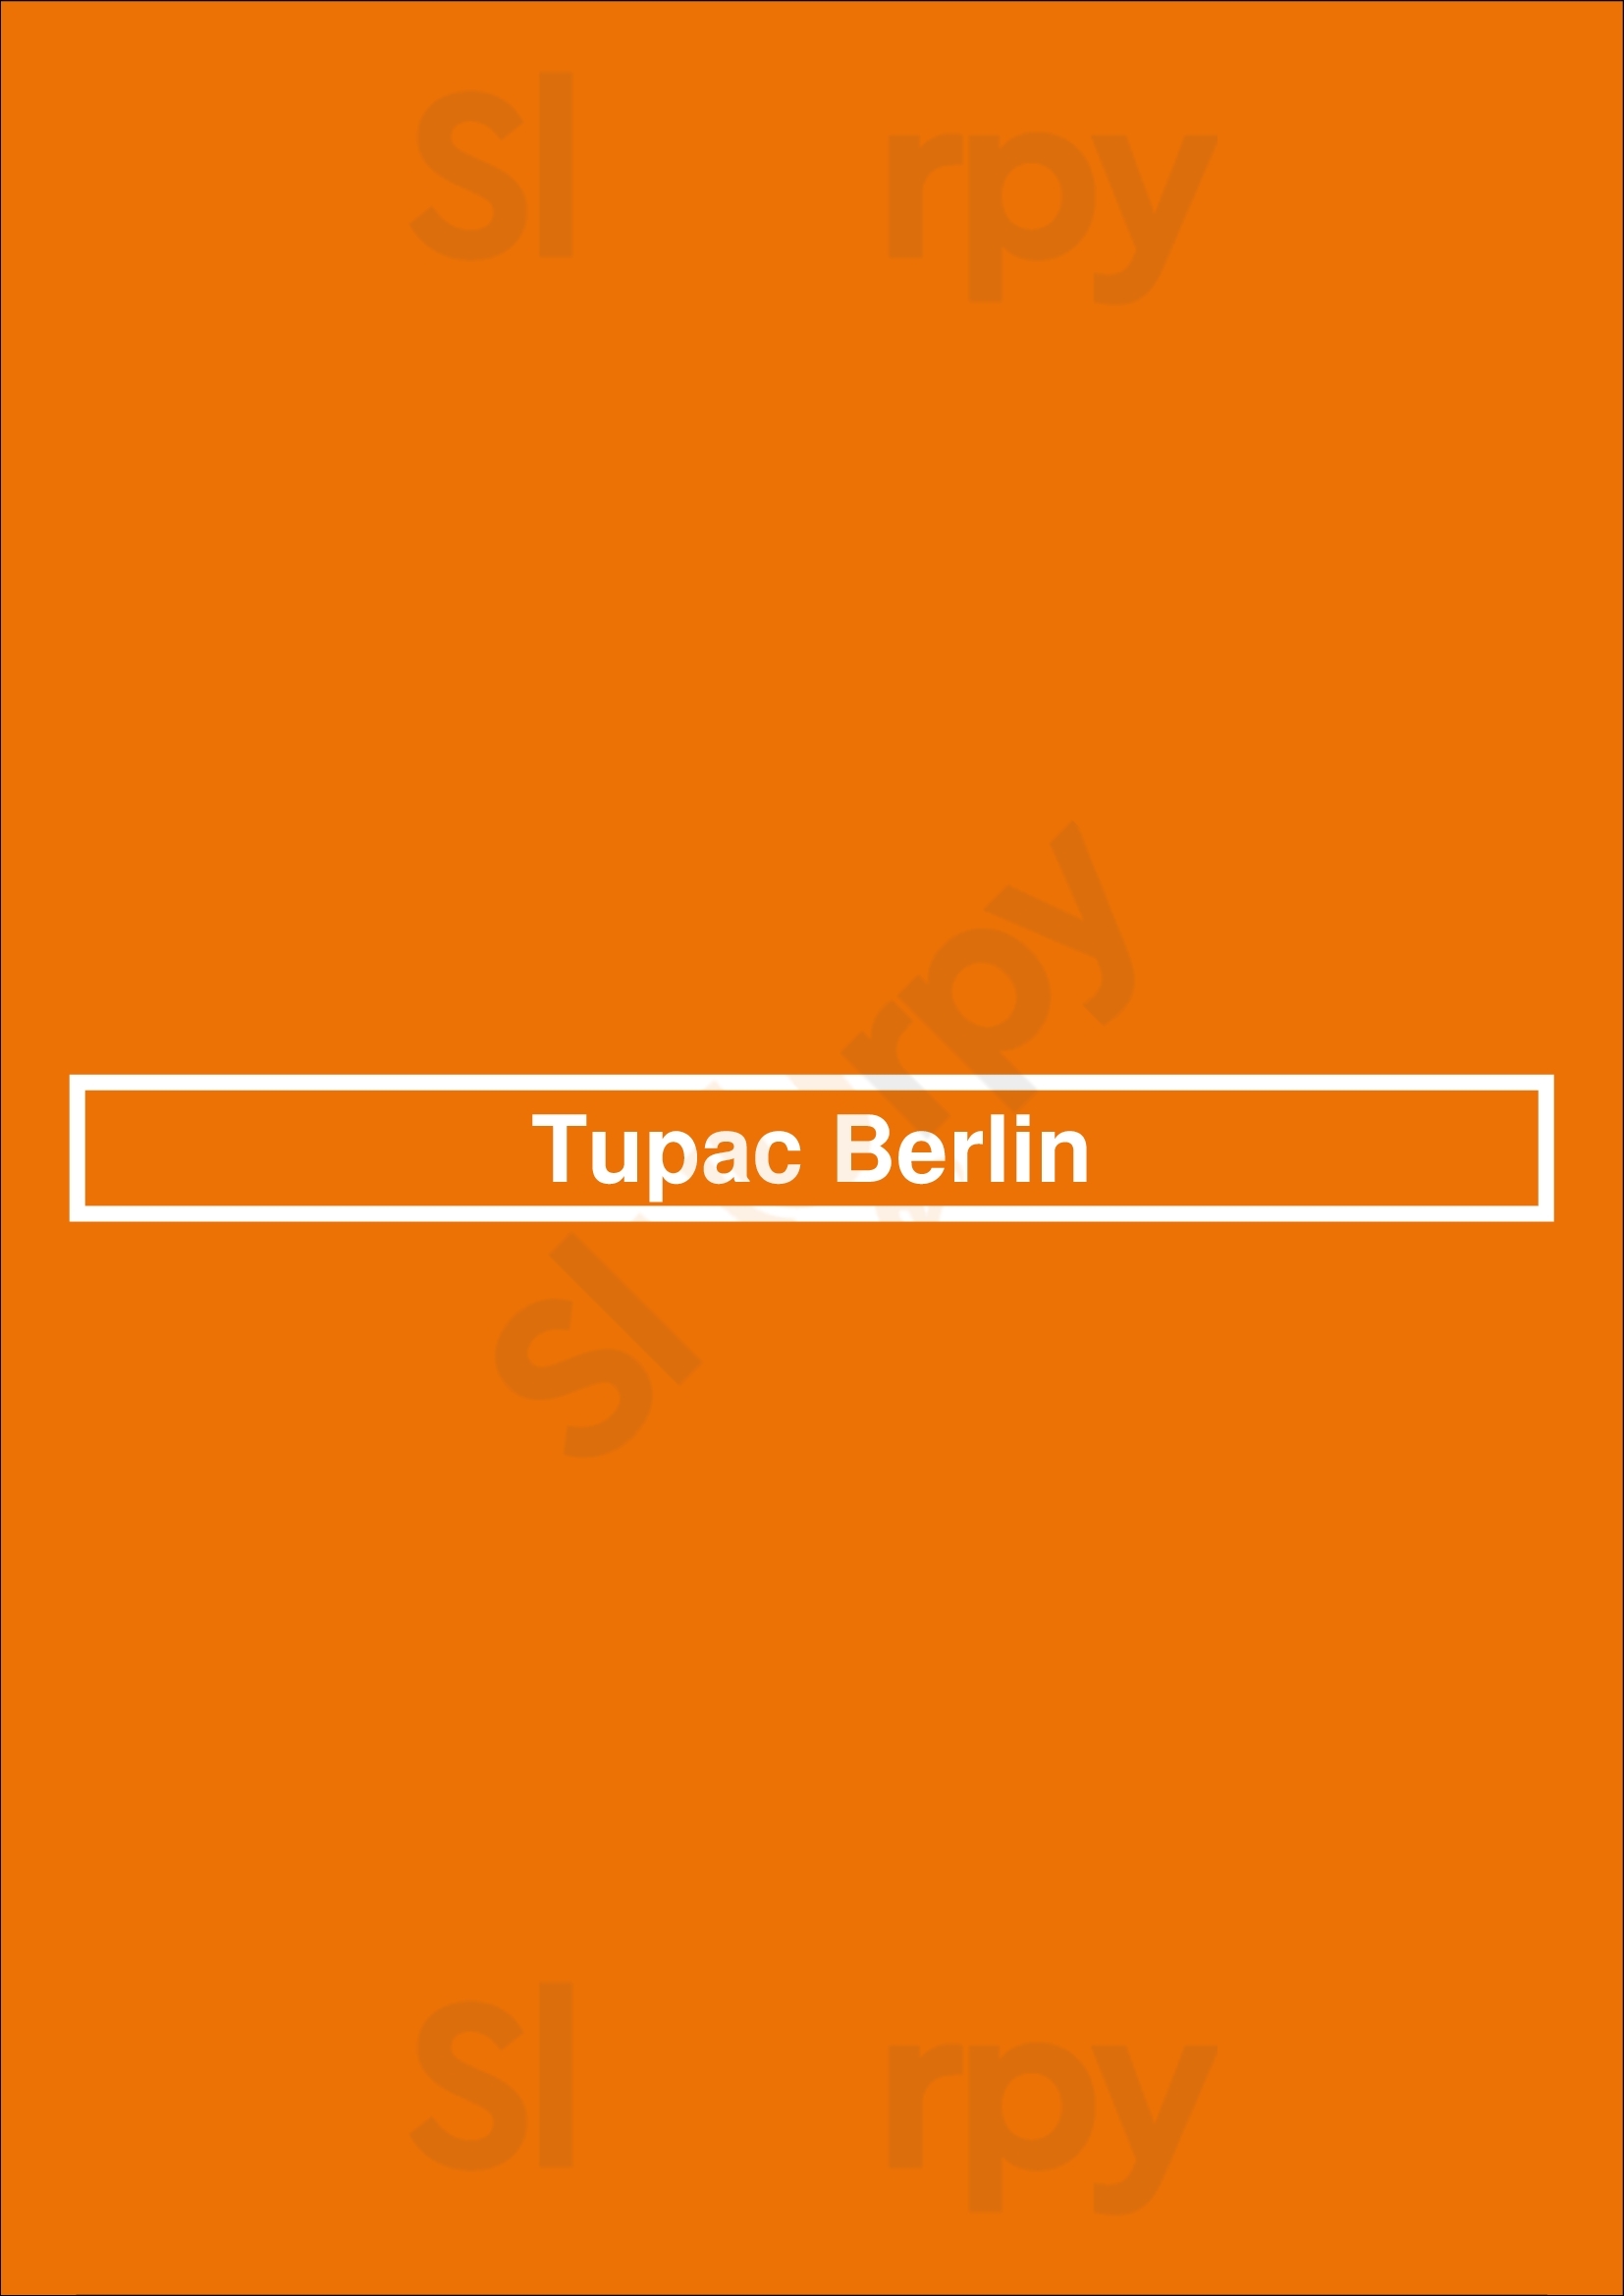 Tupac Berlin Berlin Menu - 1